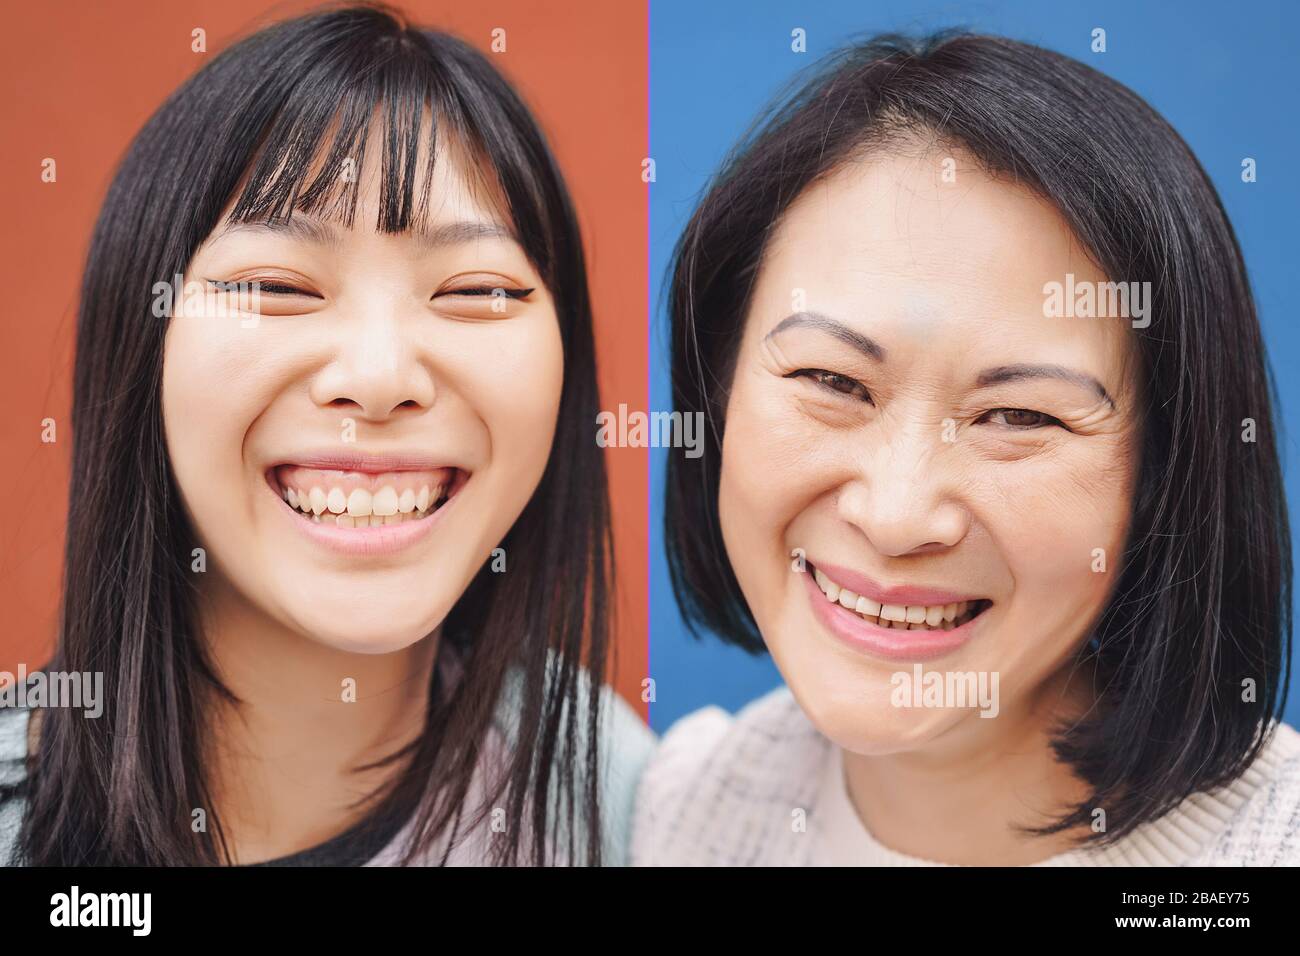 Madre asiatica felice e figlia divertirsi all'aperto - Portrait la gente cinese della famiglia che trascorre il tempo insieme fuori Foto Stock